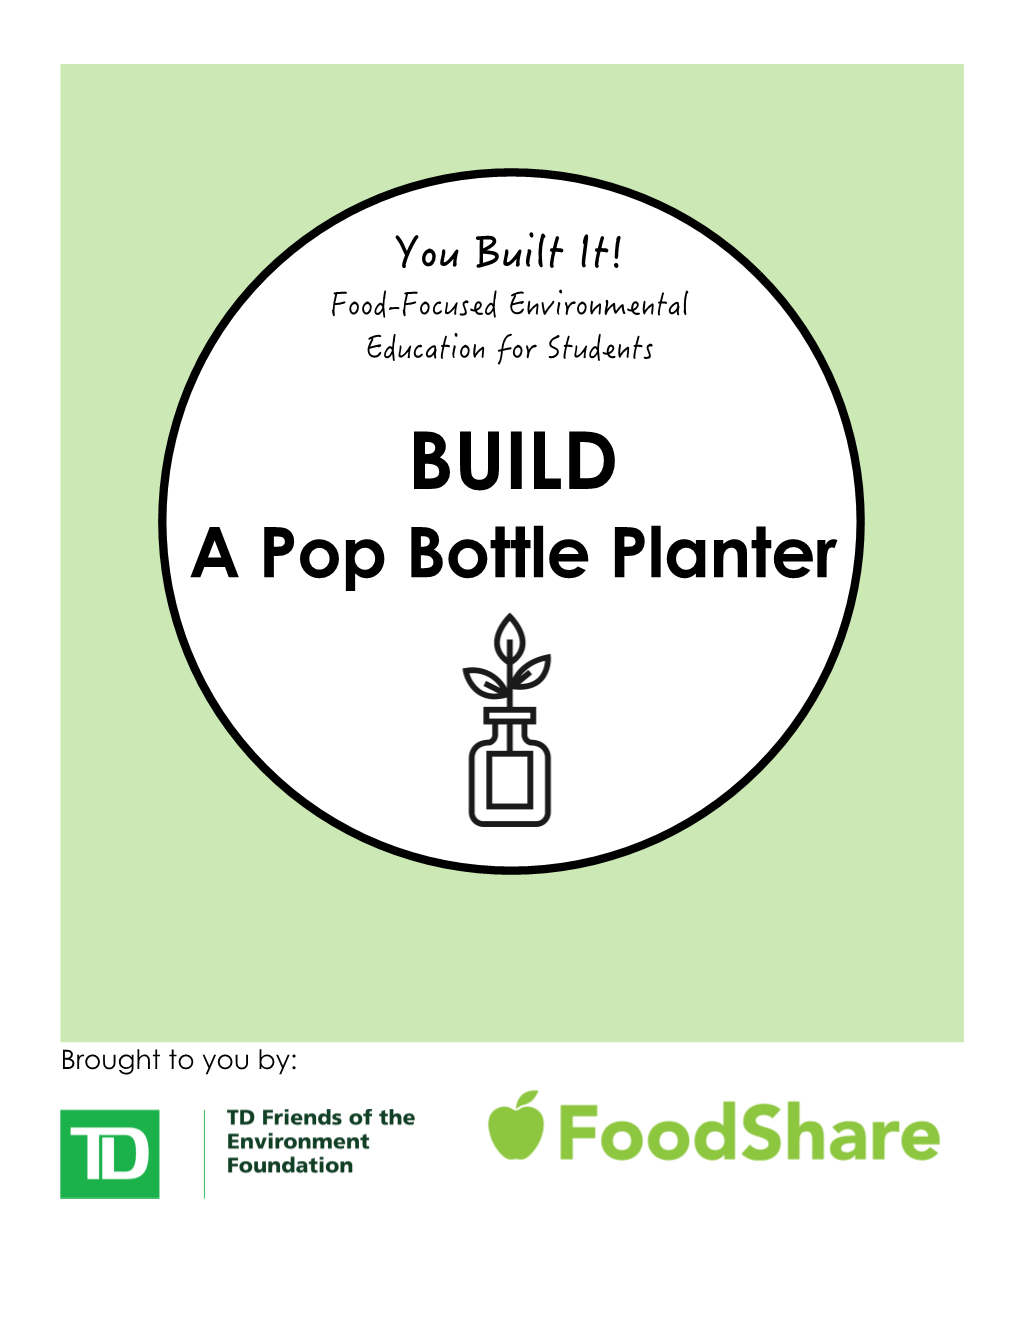 BUILD a Pop Bottle Planter